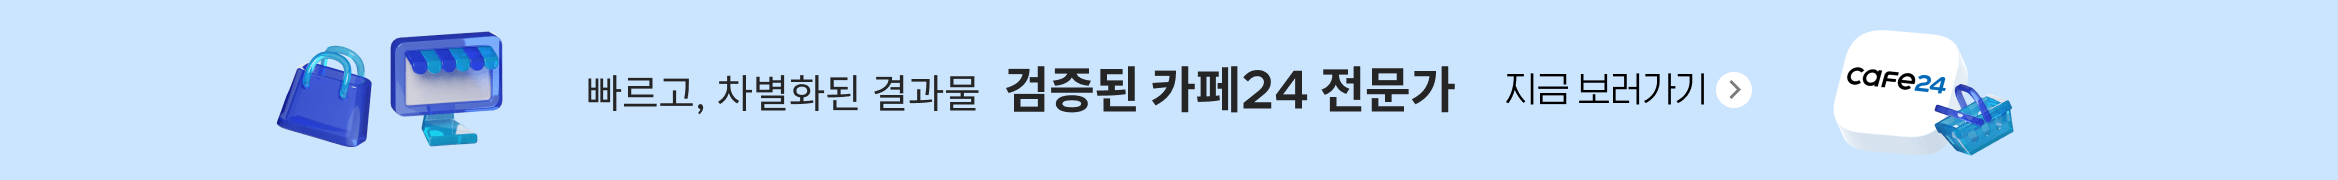 영천풀싸롱🍾 ≪OPDAL050.컴≫오피달리기 💗영천안마👱영천휴게텔⛲️영천OP🌑영천건마😂영천립카페🐌영천립카페😟 배너